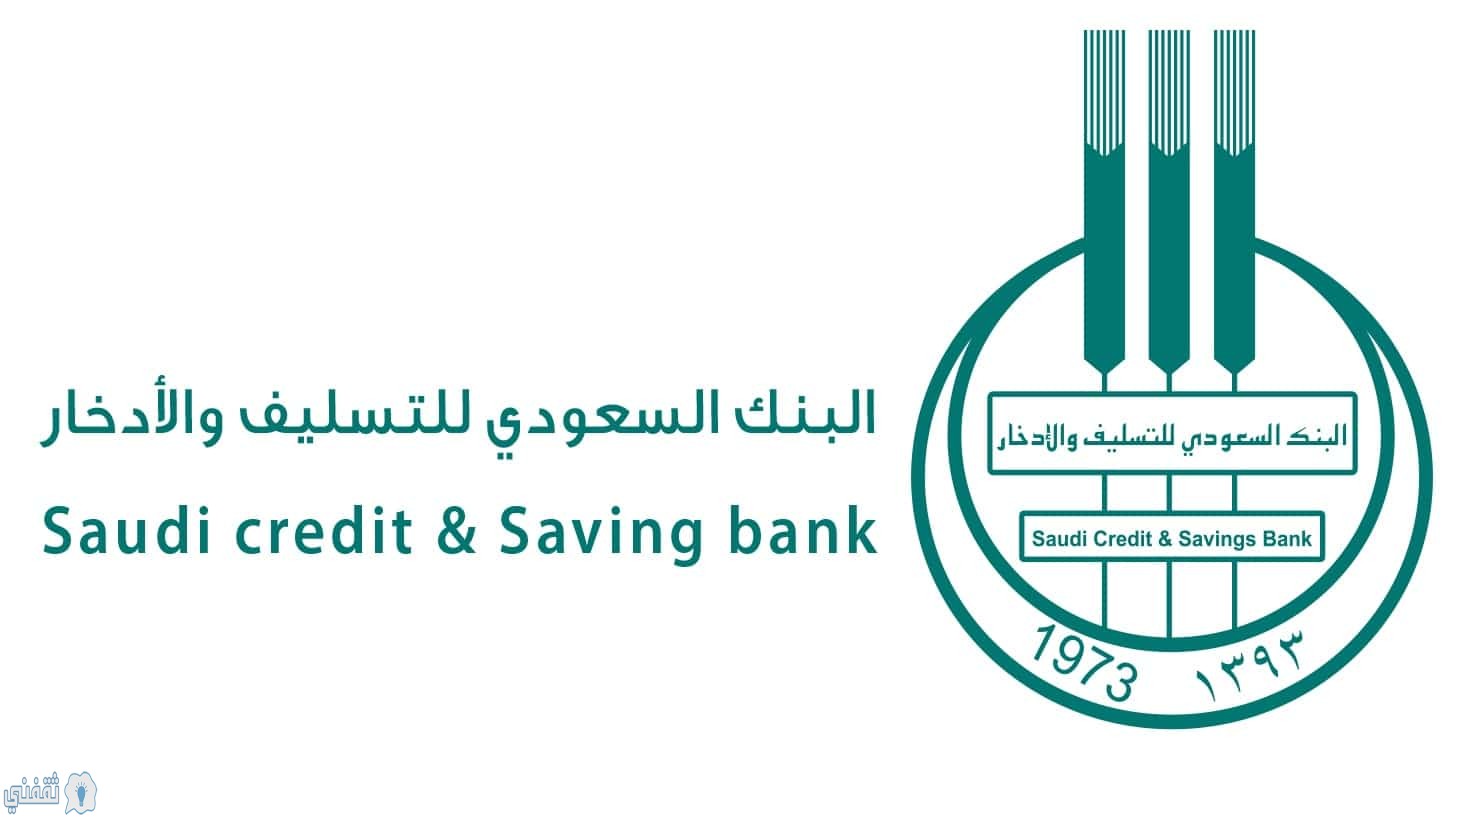 رابط استعلام قروض الزواج من البنك السعودي للتسليف والادخار وشرح طريقة التسجيل scsb.gov.sa الآن